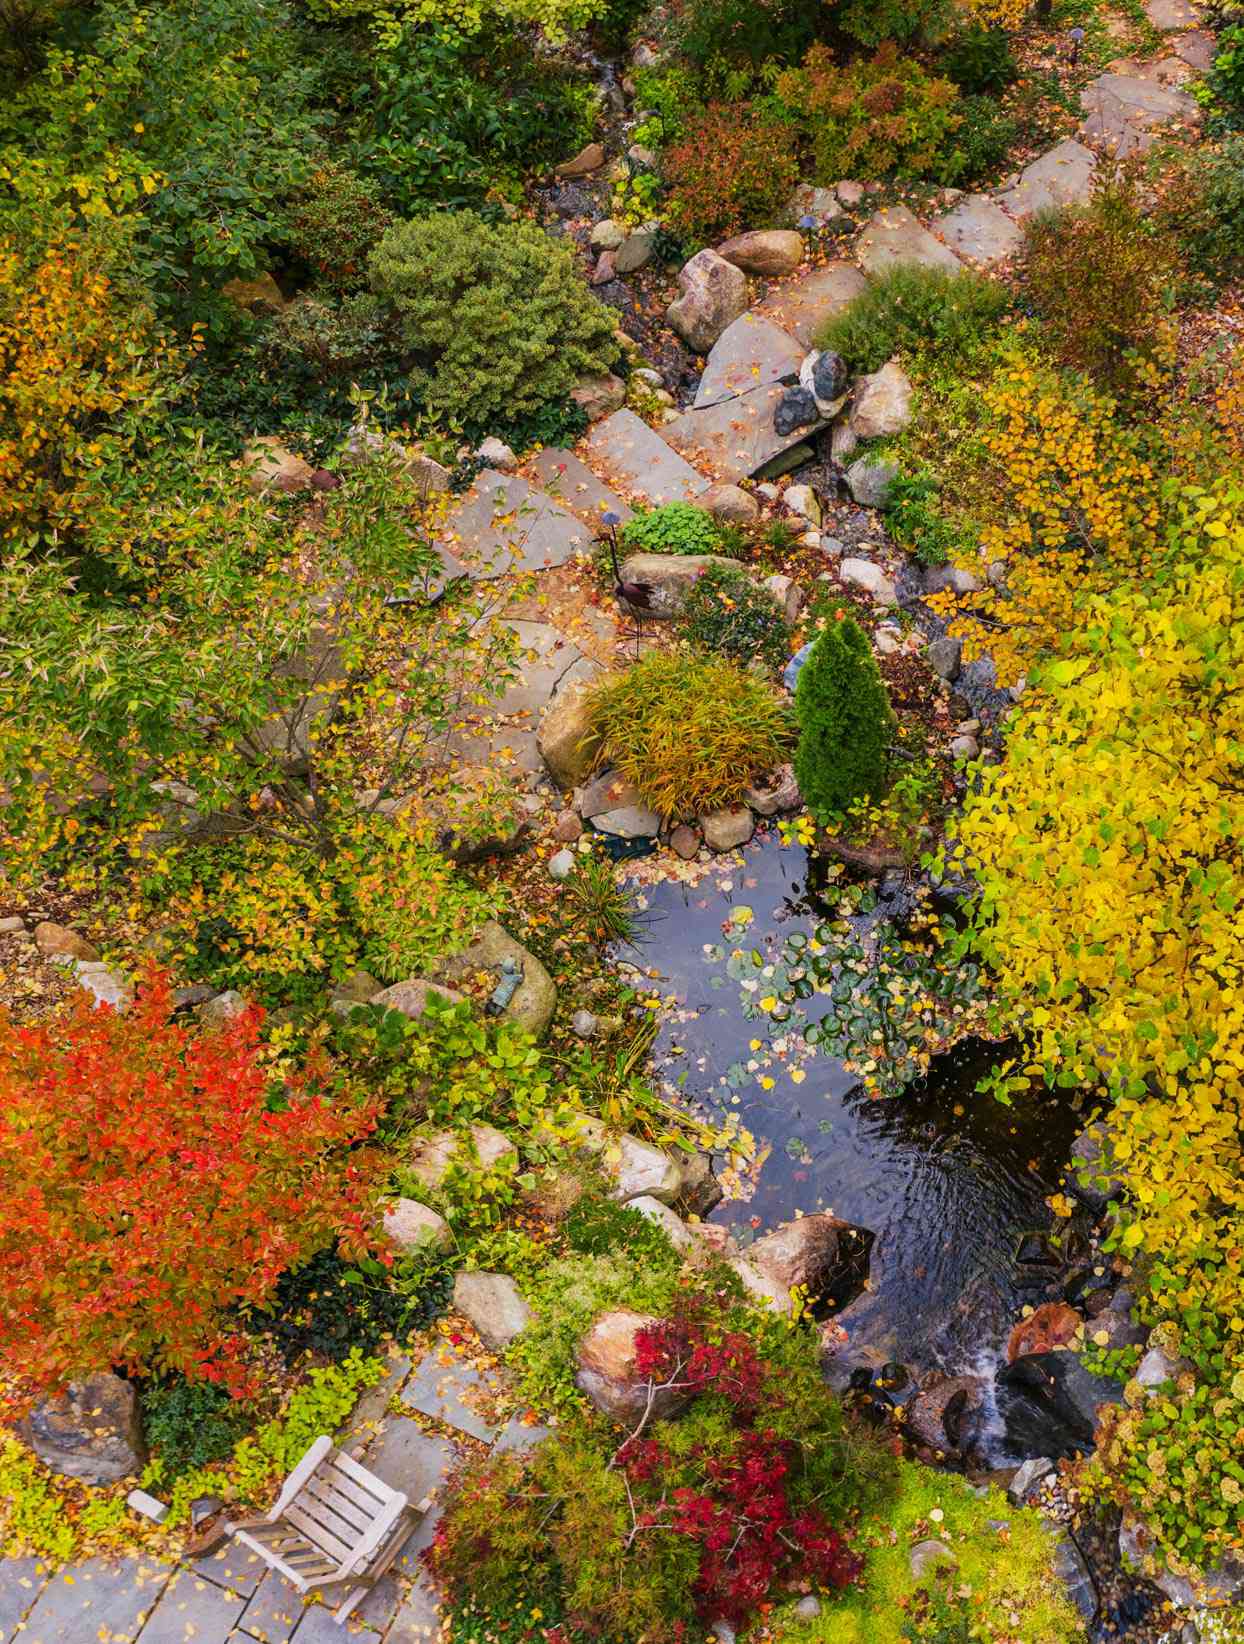 River rock garden in fall